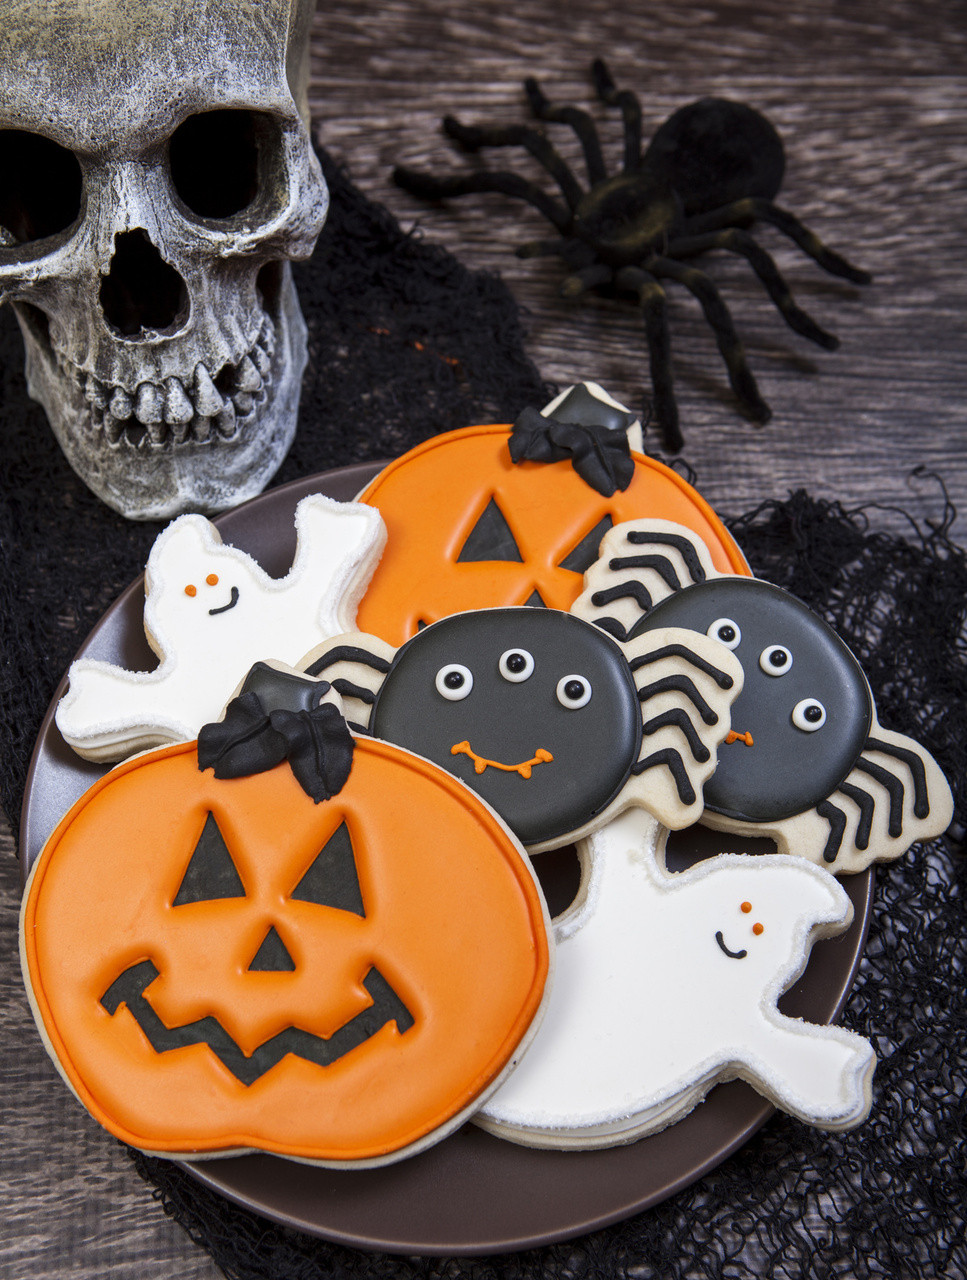 Decorating Halloween Cookies
 Spooky Cookie Halloween Cookie Decorations